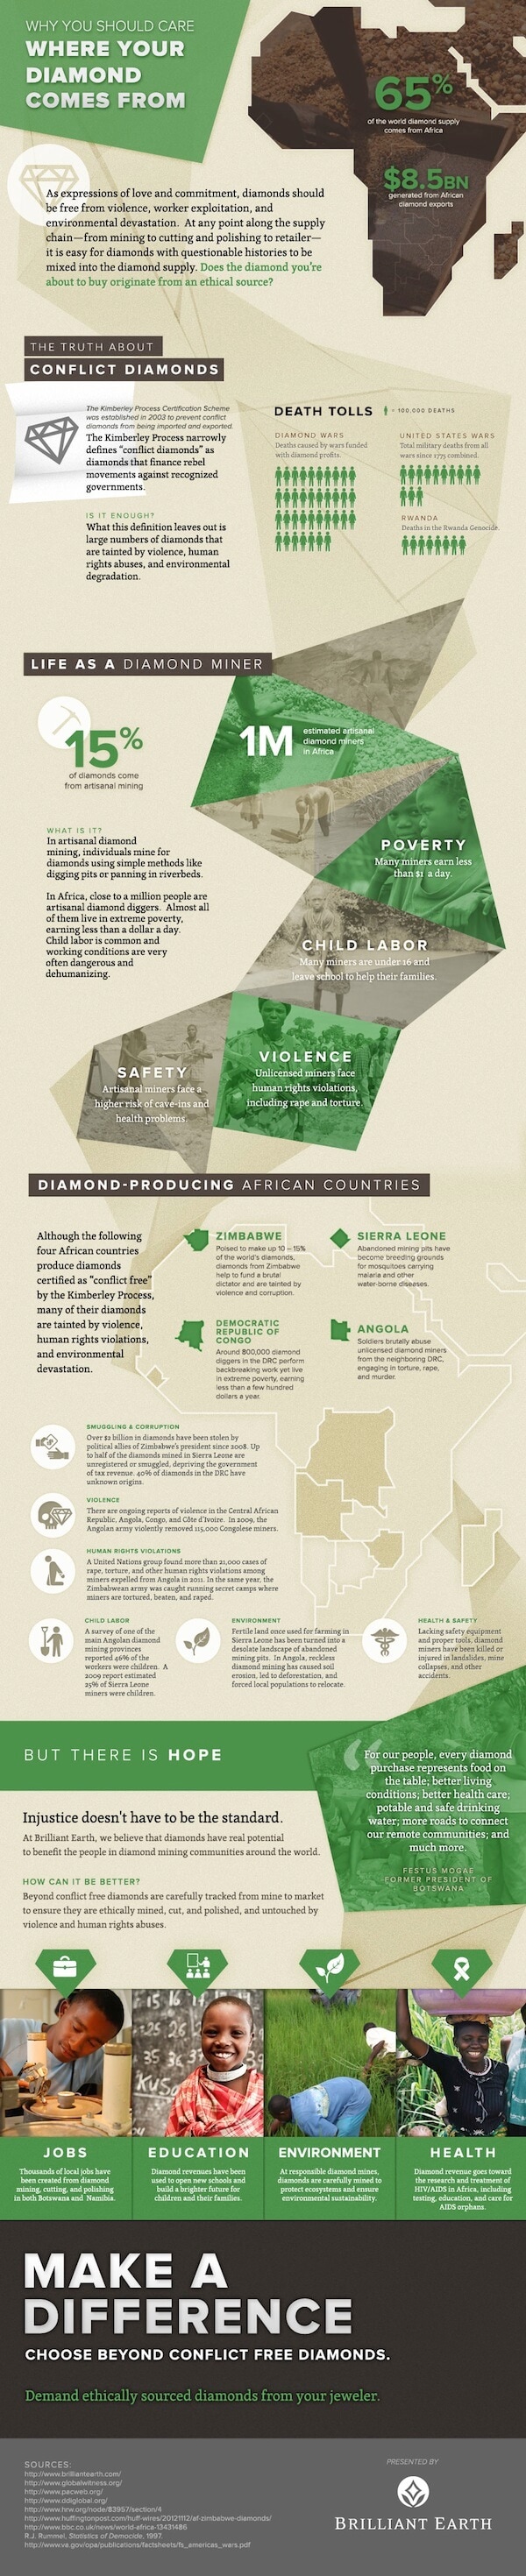 关于冲突钻石信息图的真相